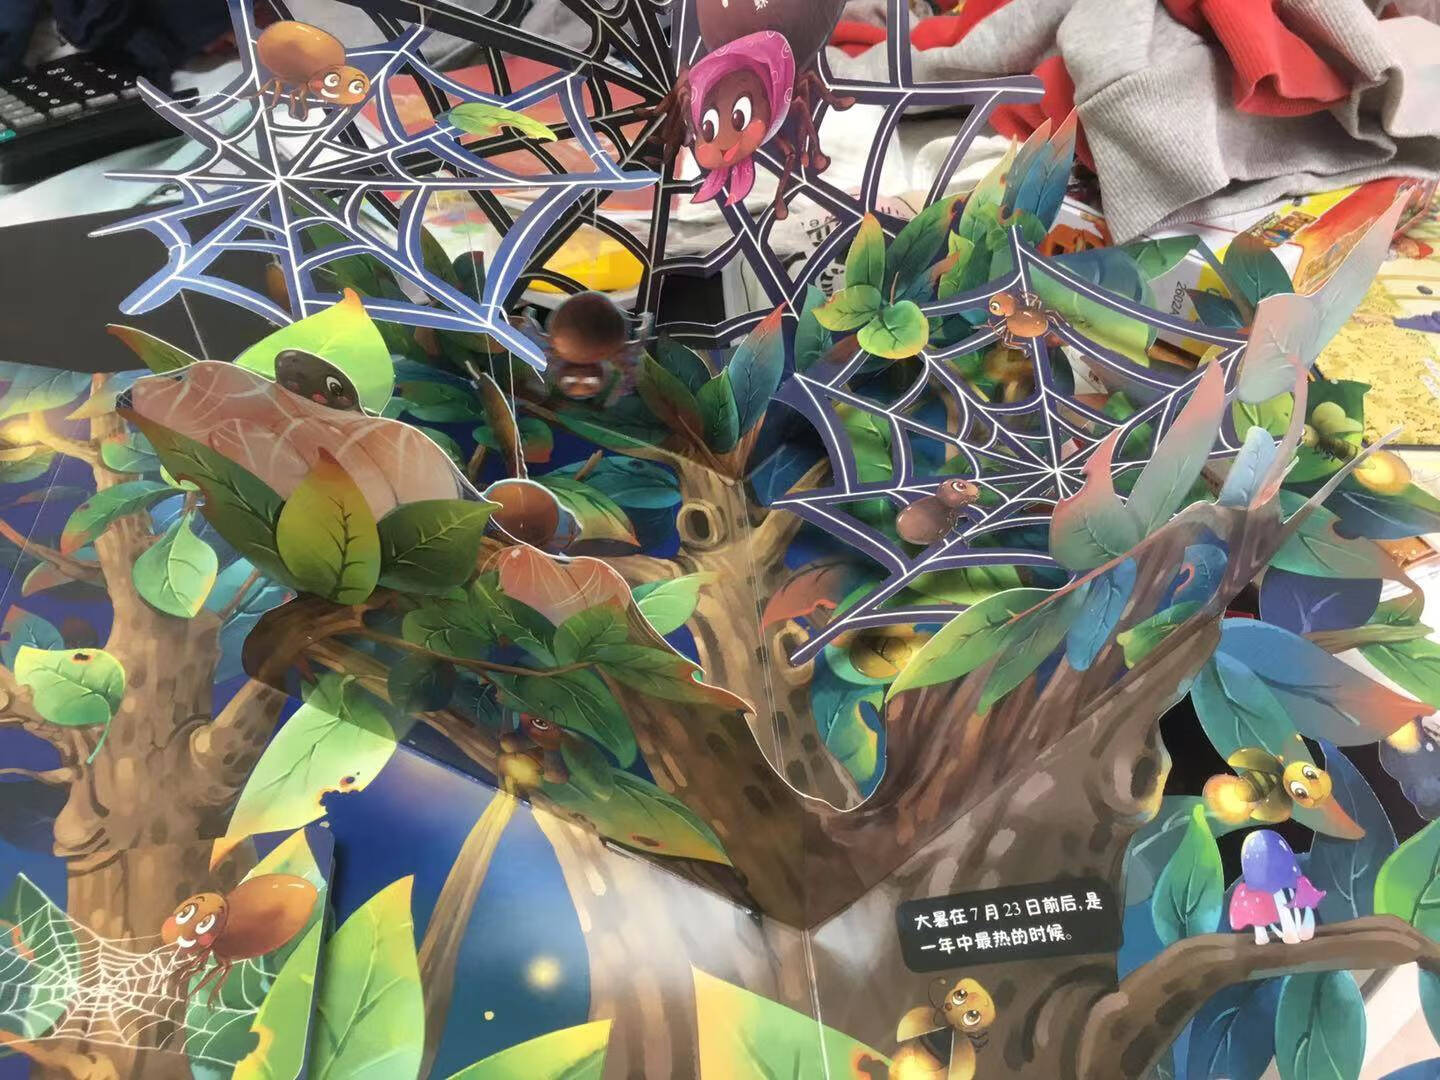 神奇的生命3D立体书精装版走进自然博物馆